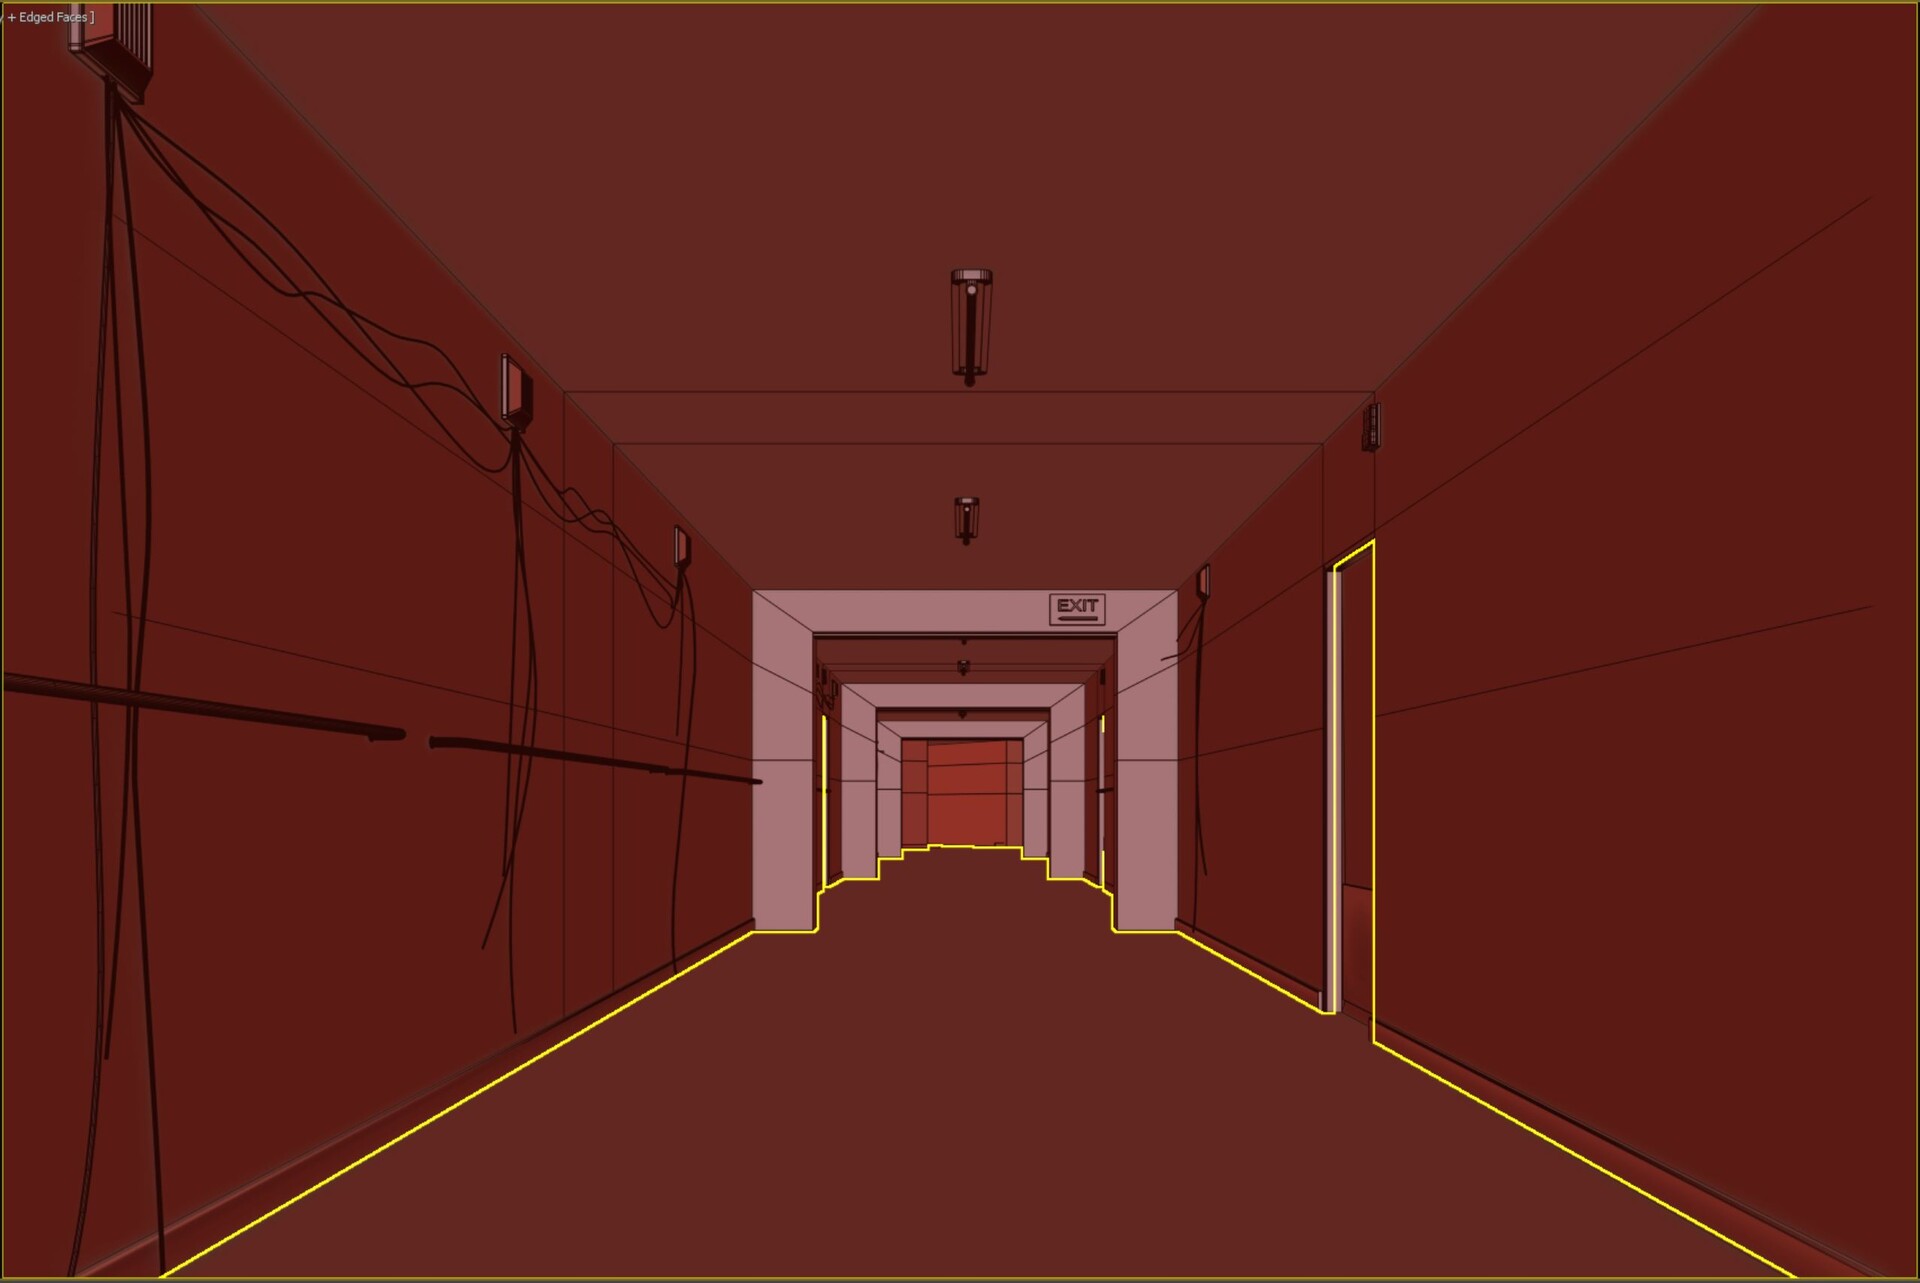 ArtStation - Old Bed Frame - (Horror Corridor)